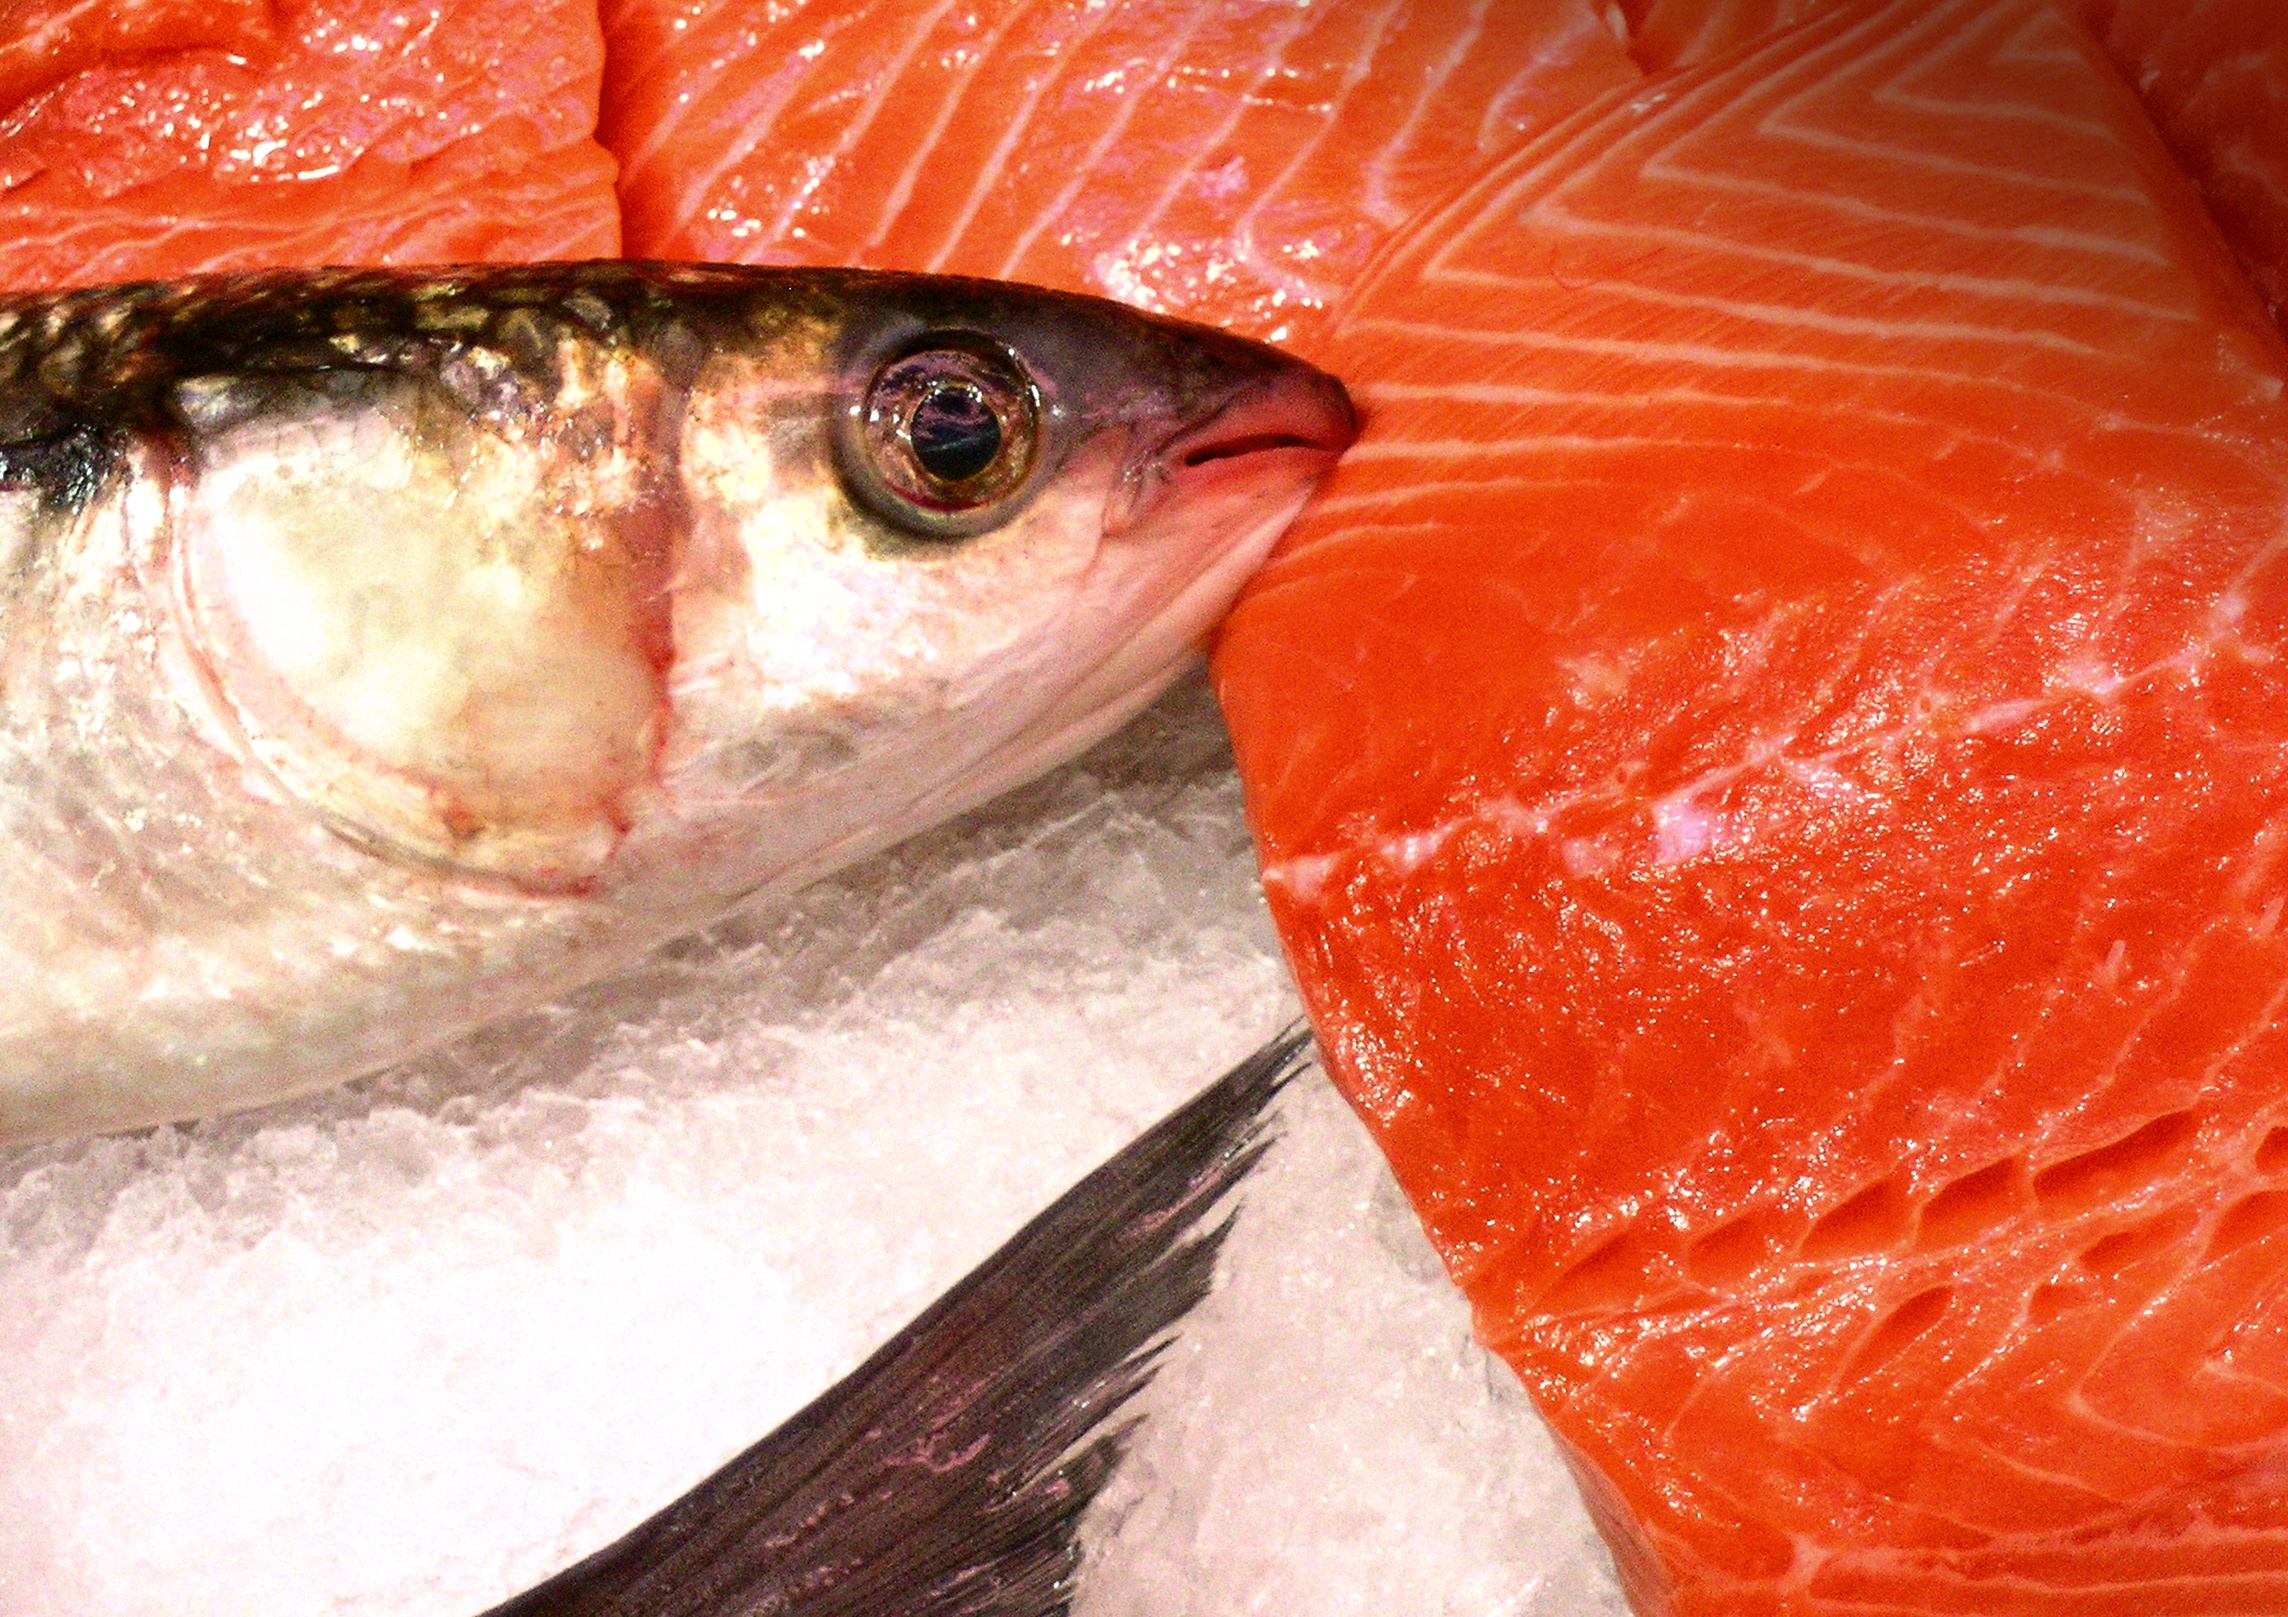 Le saumon est un des poissons les plus riches en oméga-3. © Jacques PALUT, Fotolia